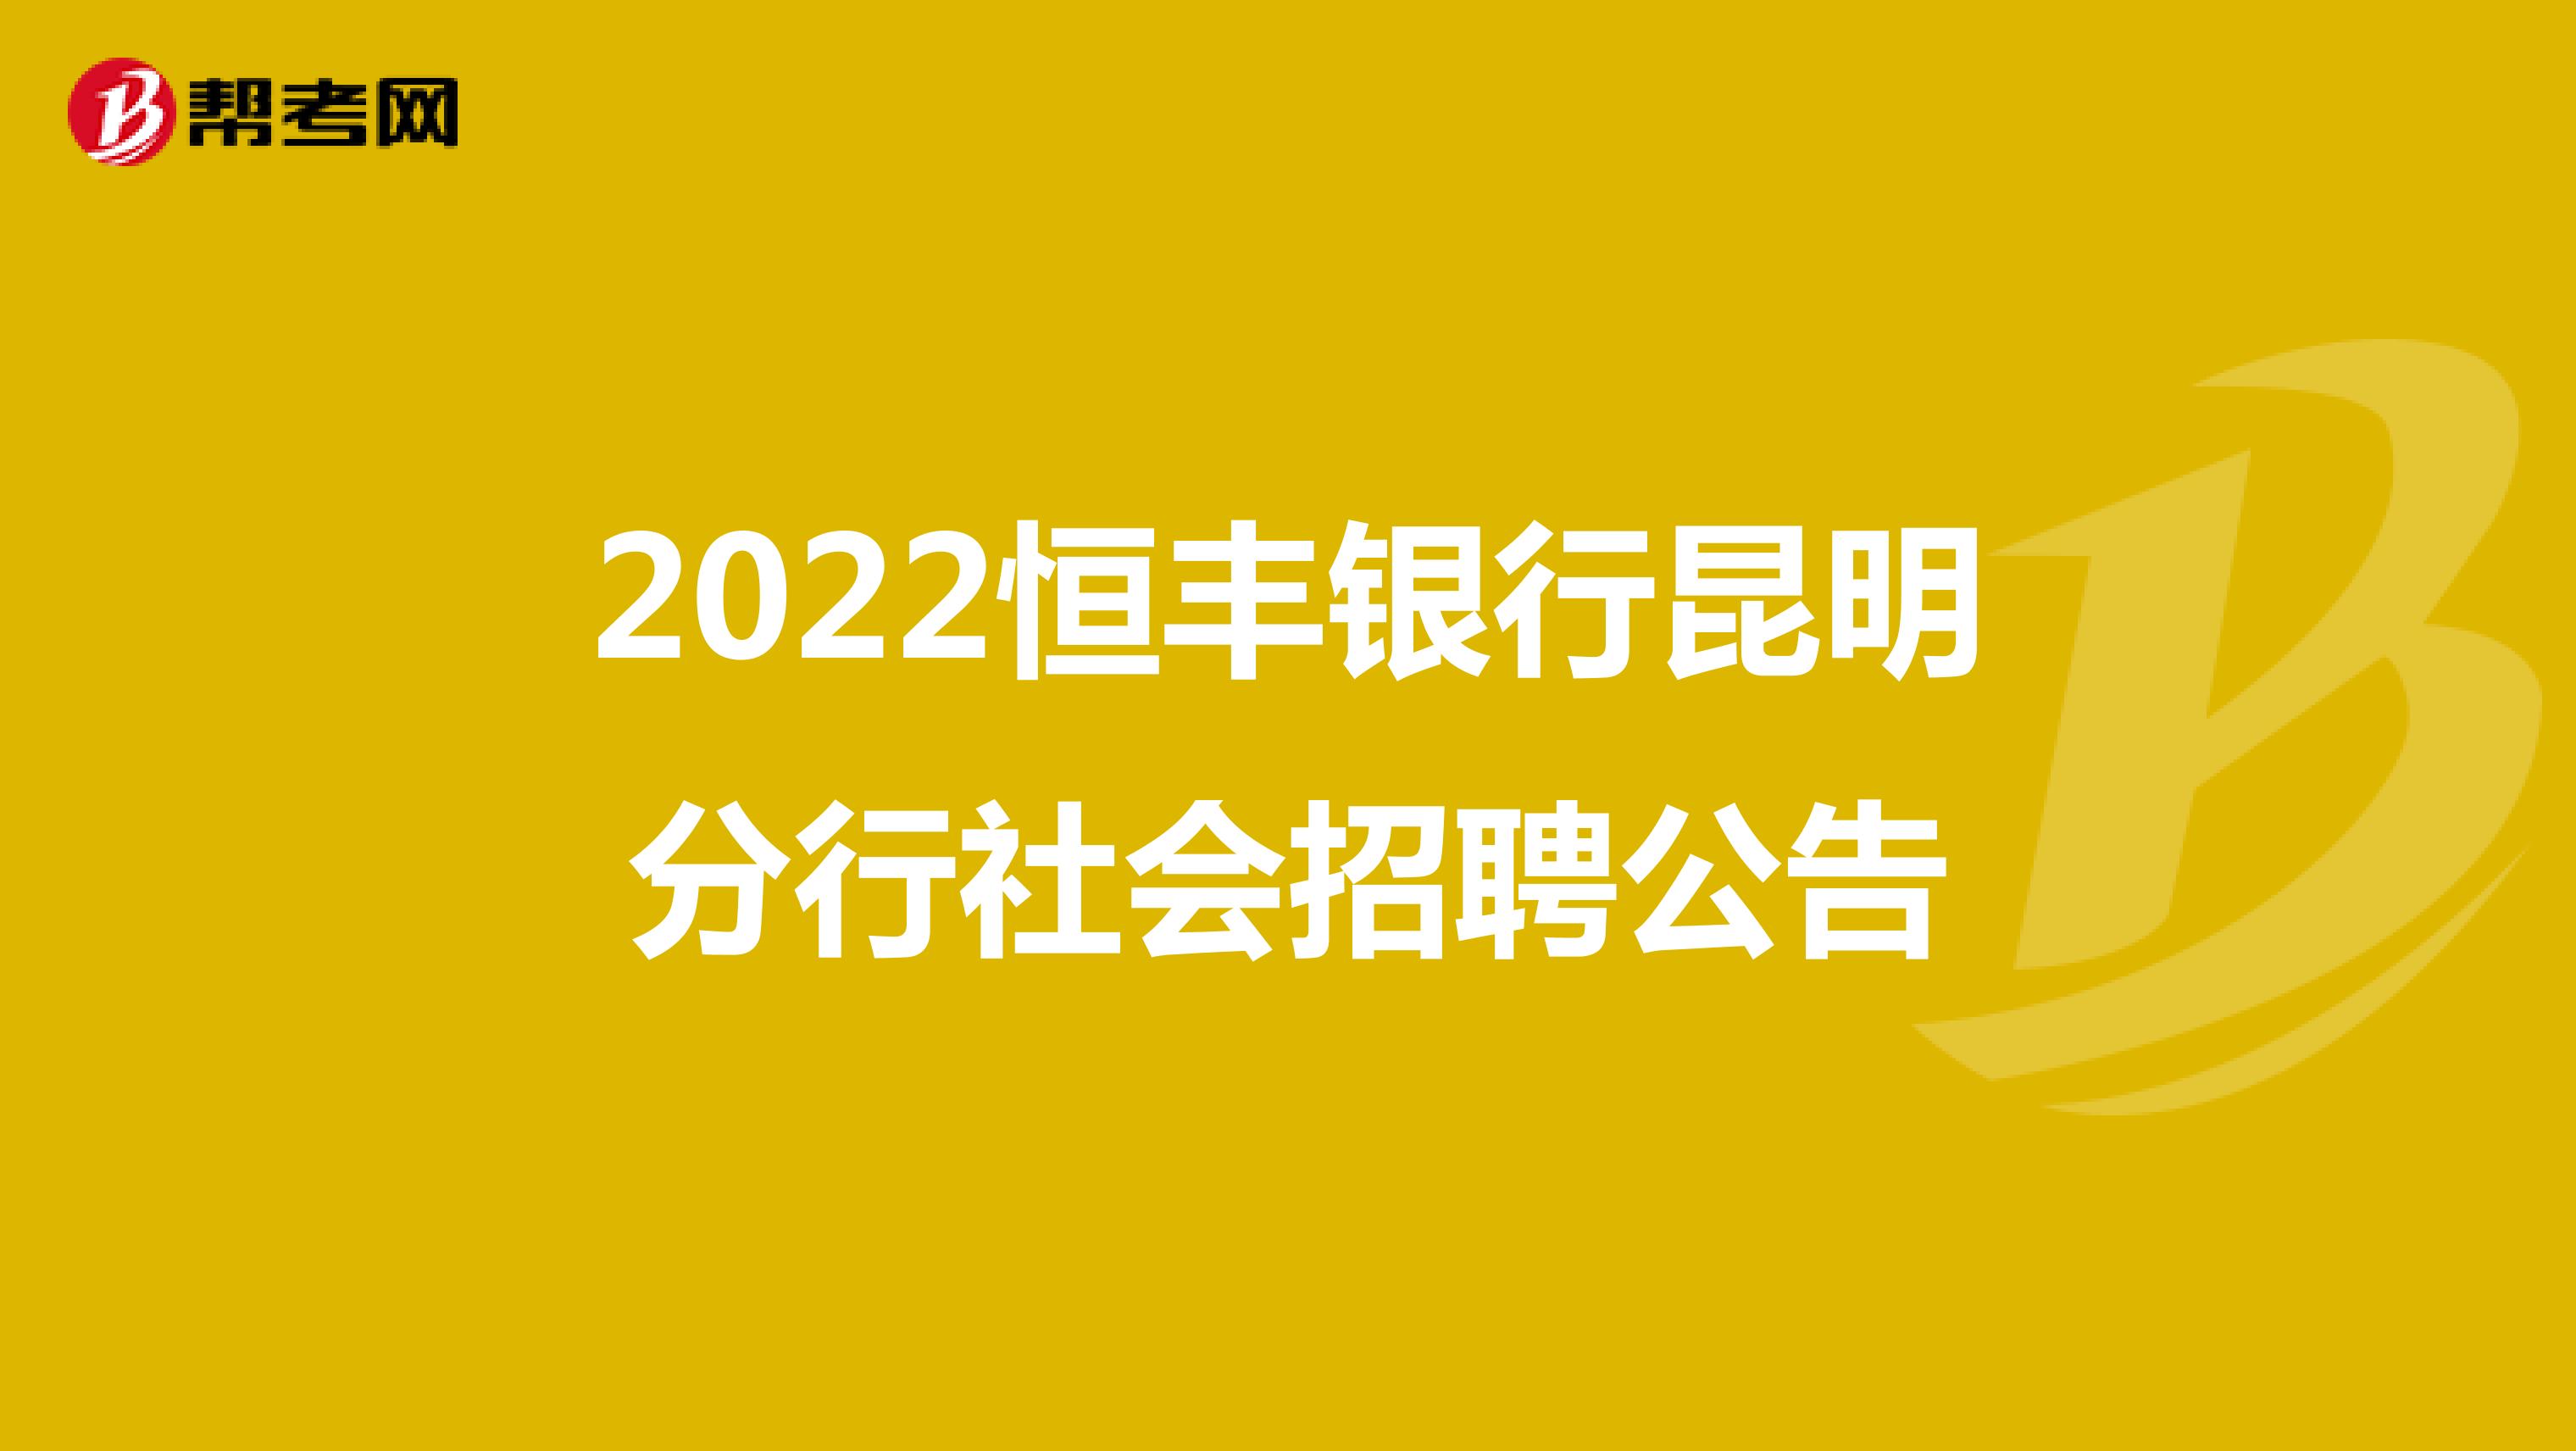 2022恒丰银行昆明分行社会招聘公告